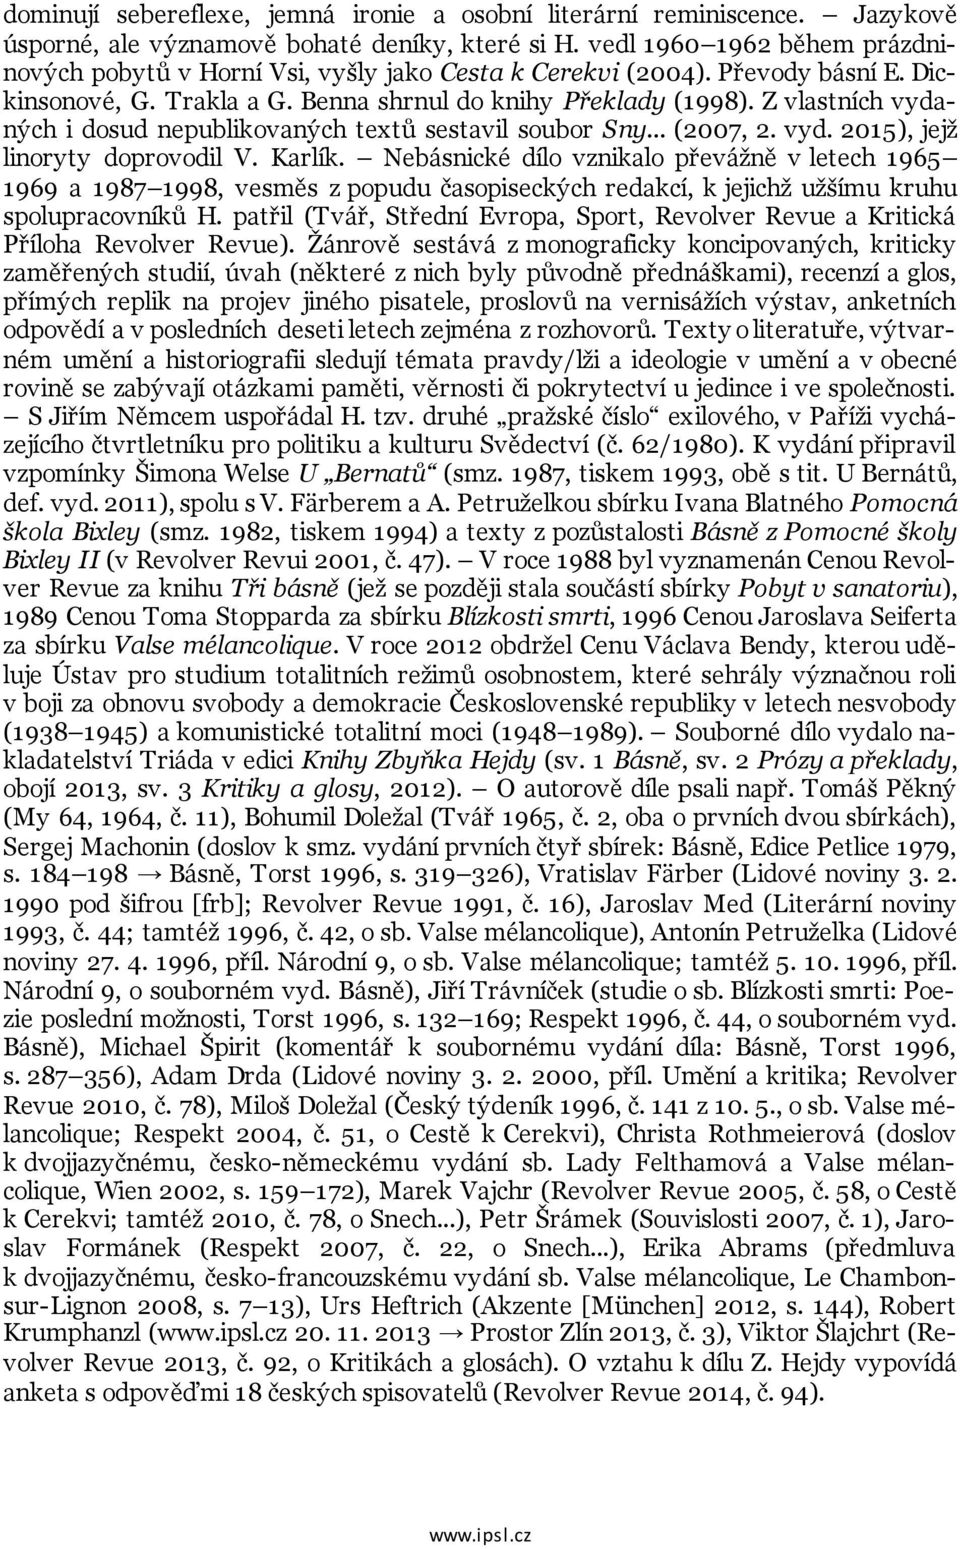 Z vlastních vydaných i dosud nepublikovaných textů sestavil soubor Sny... (2007, 2. vyd. 2015), jejž linoryty doprovodil V. Karlík.